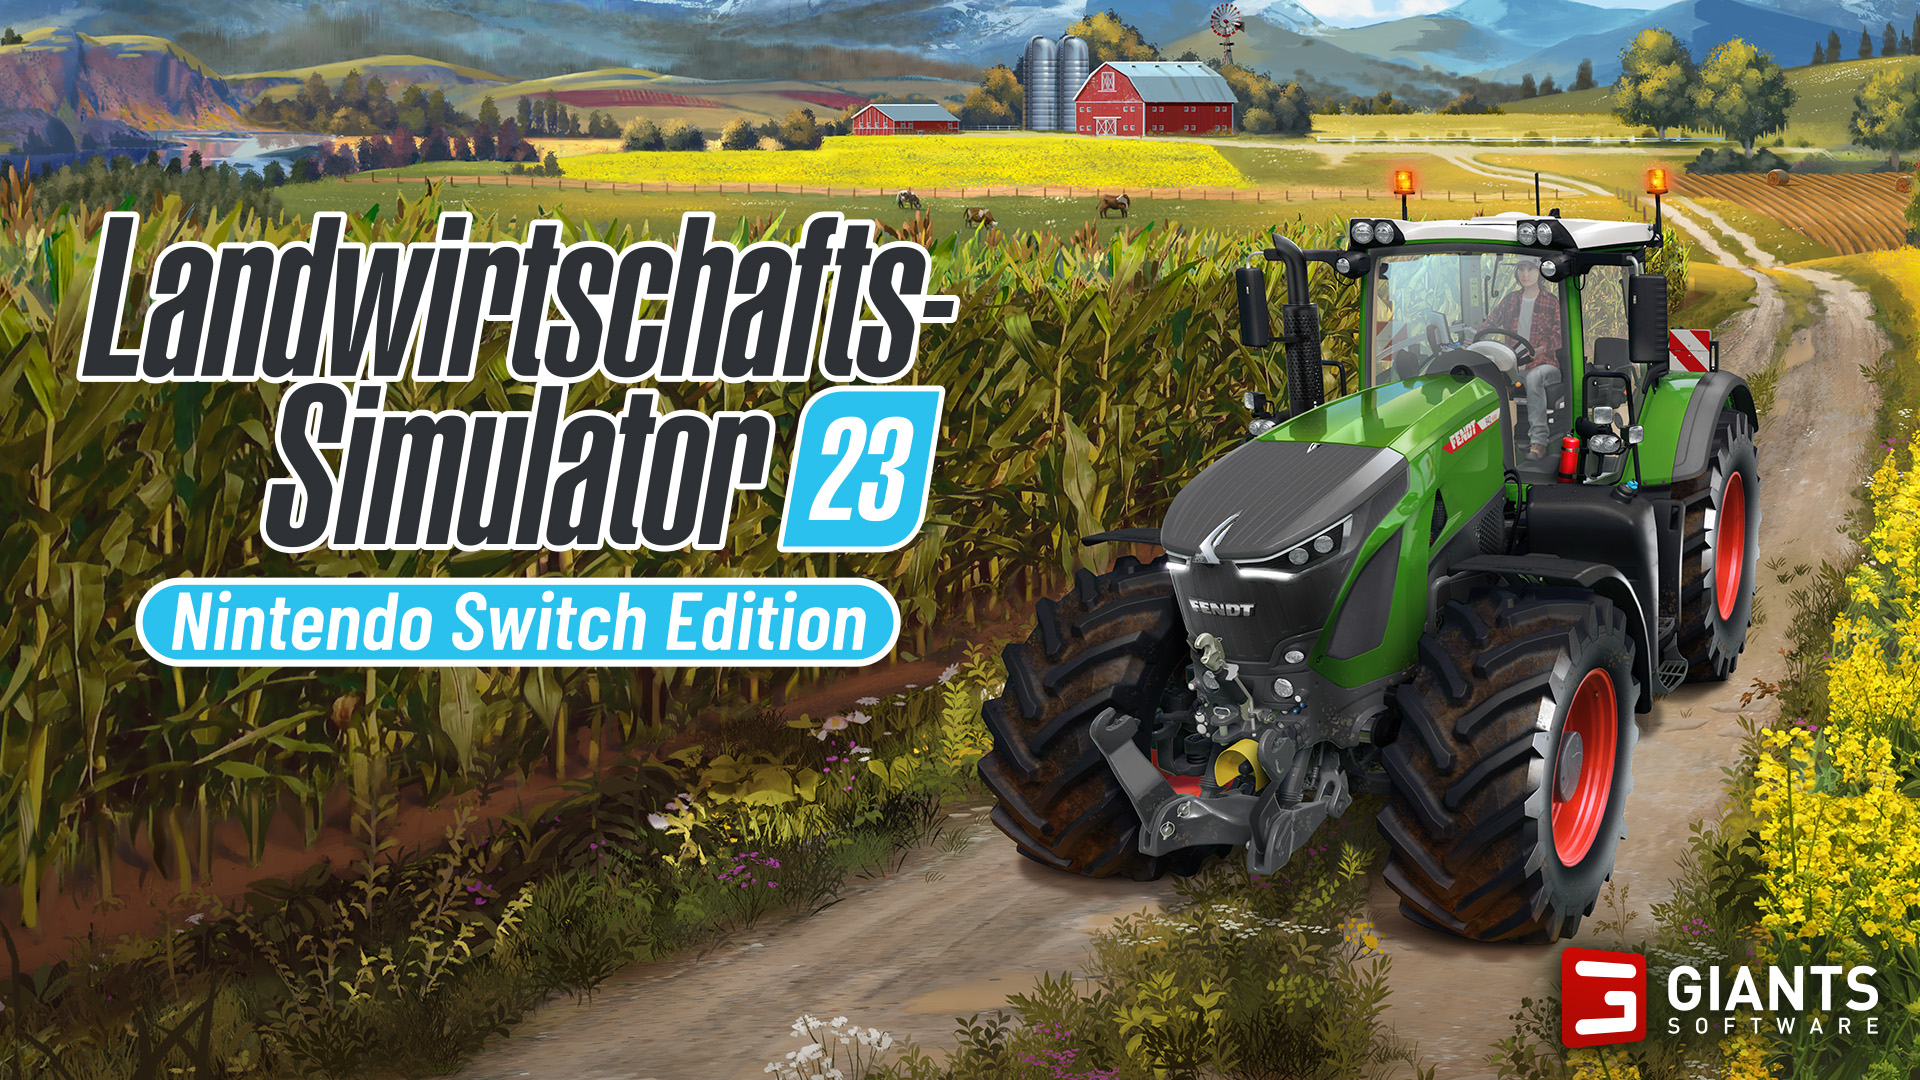 Landwirtschafts-Simulator erscheint für im Nintendo Switch Mai 23